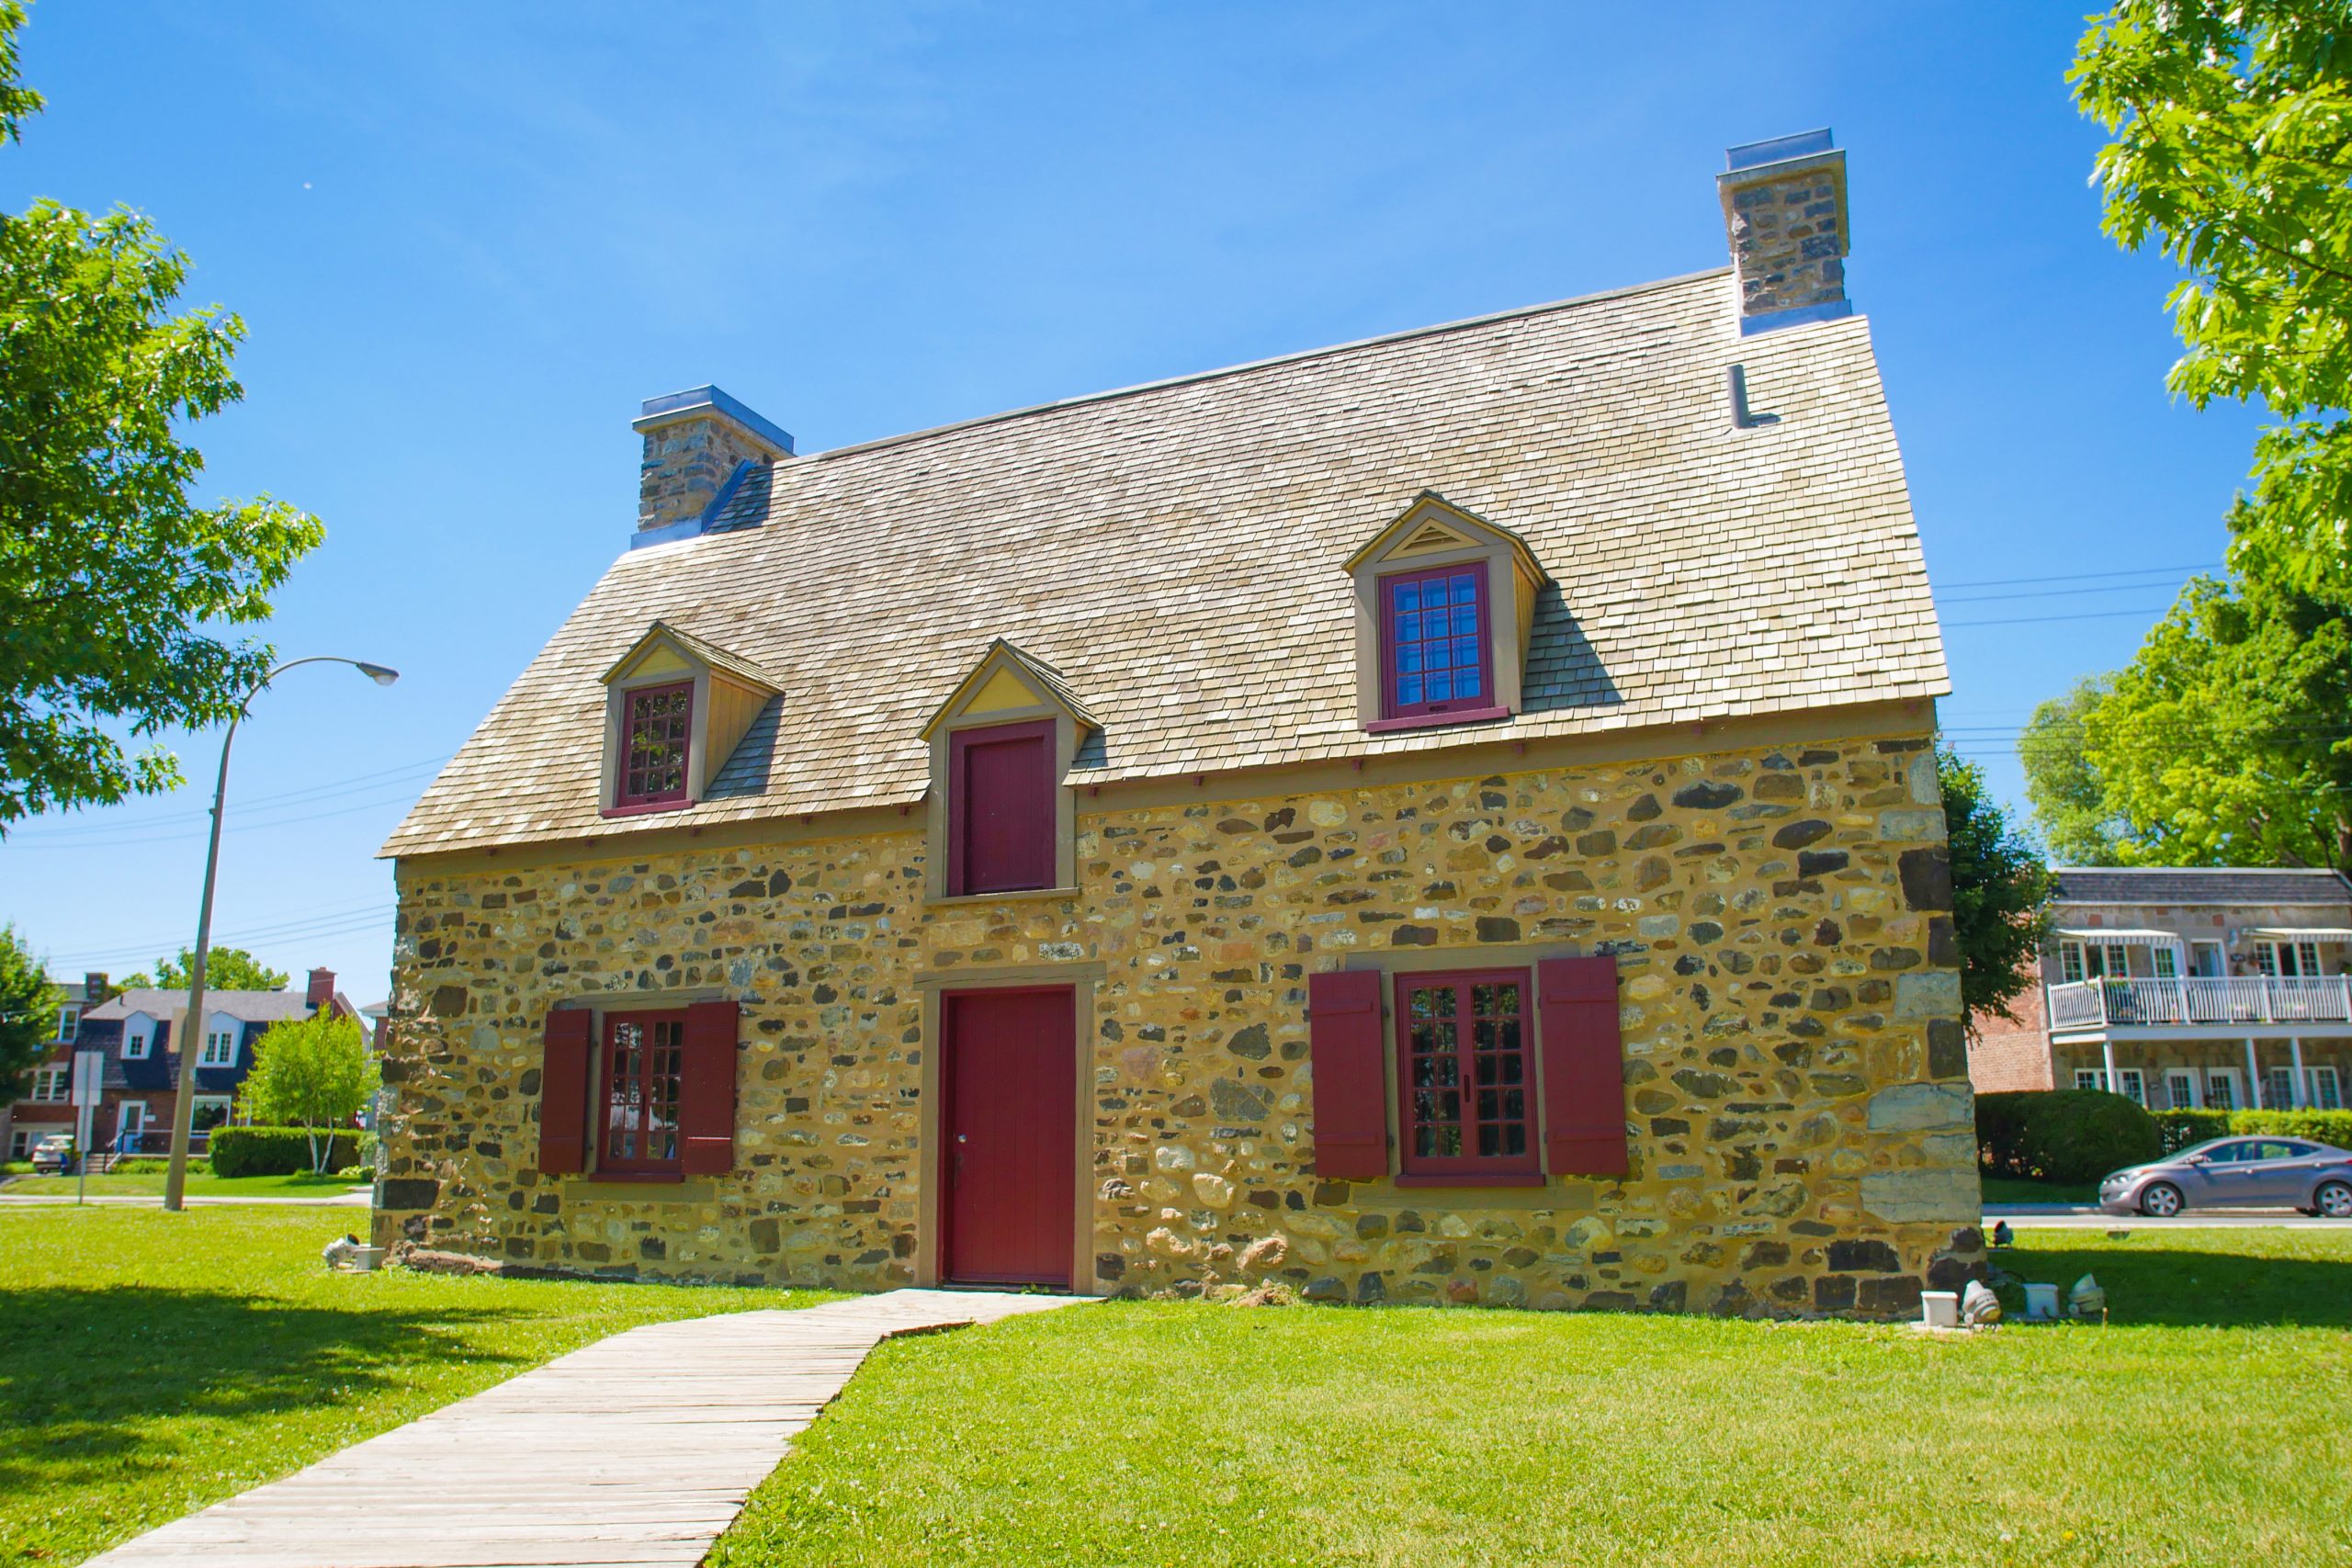 Photographie couleur d'une maison en pierre comportant une porte centrale en bois peinte rouge, deux fenêtres avec volets rouges, deux lucarnes et deux cheminées. En arrière-plan, une rue et deux bâtiments.